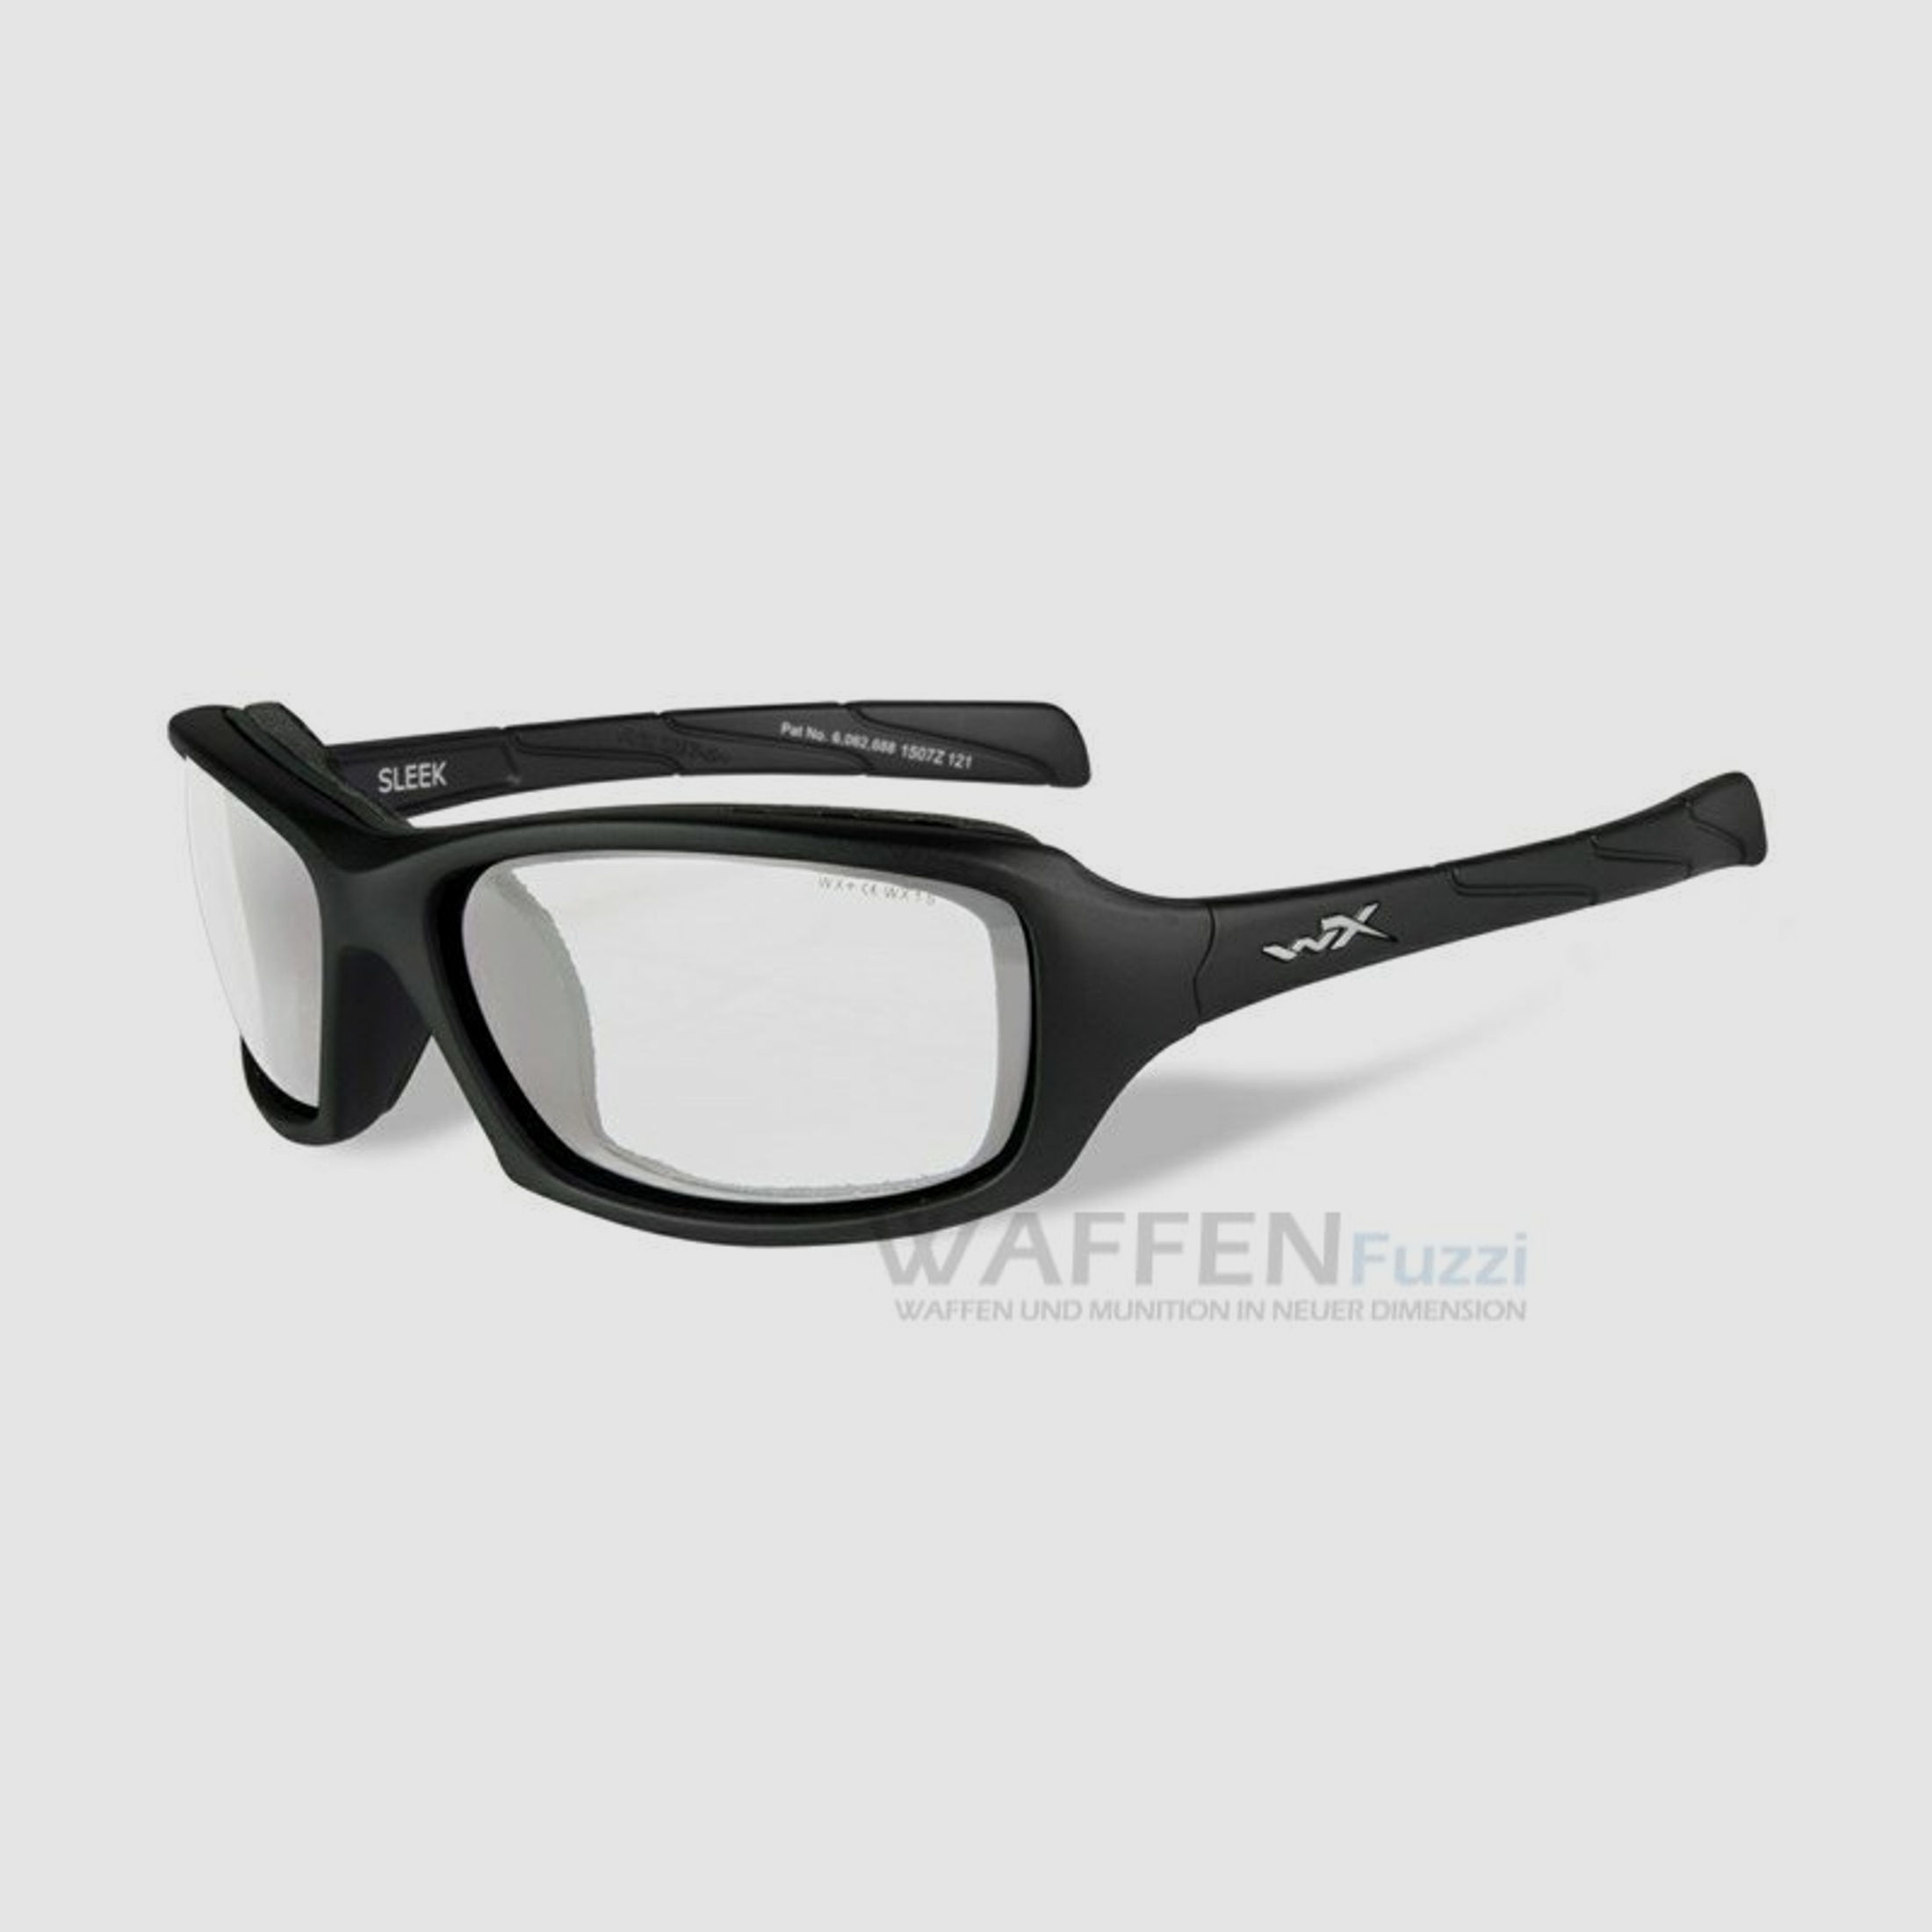 WileyX Sleek Schießbrille